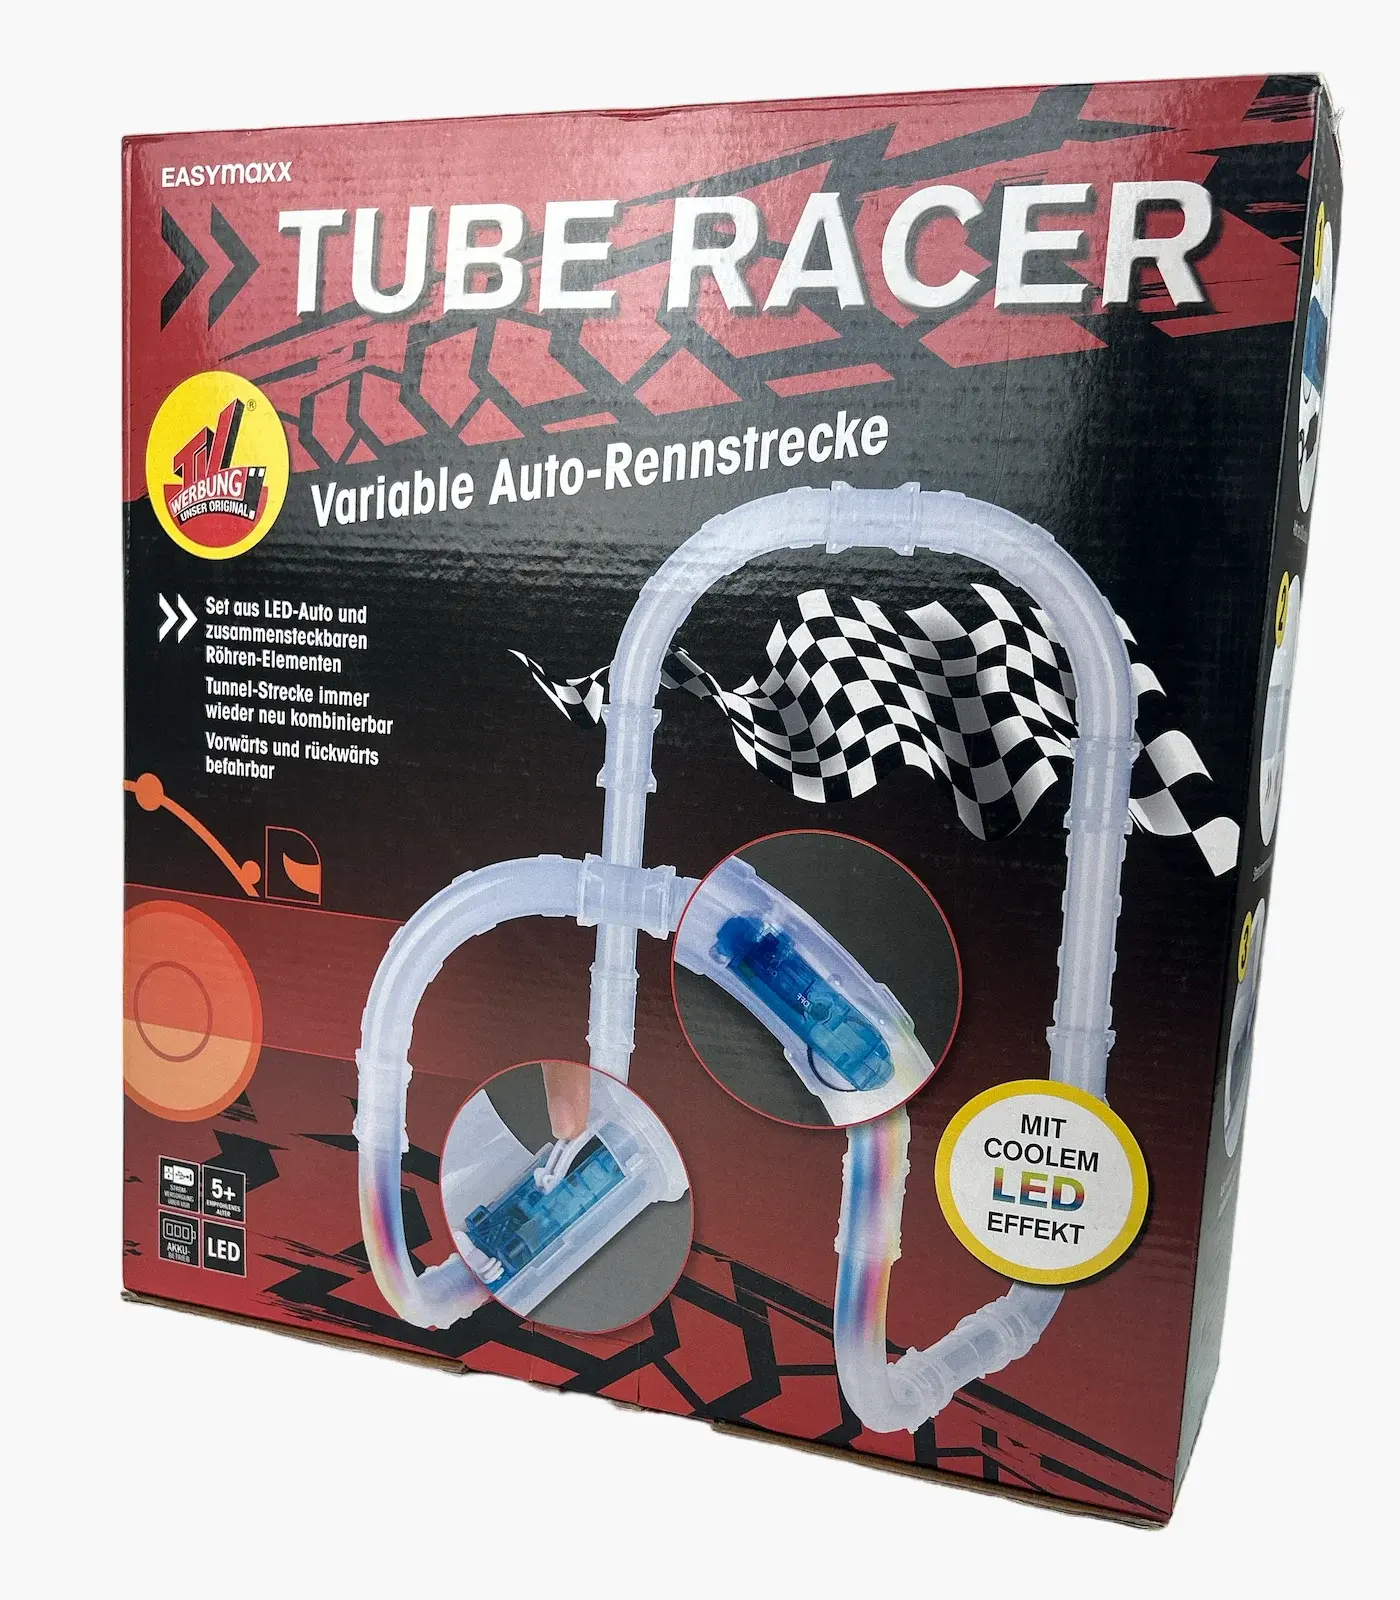 Easymaxx Tube Racer Trkačka staza